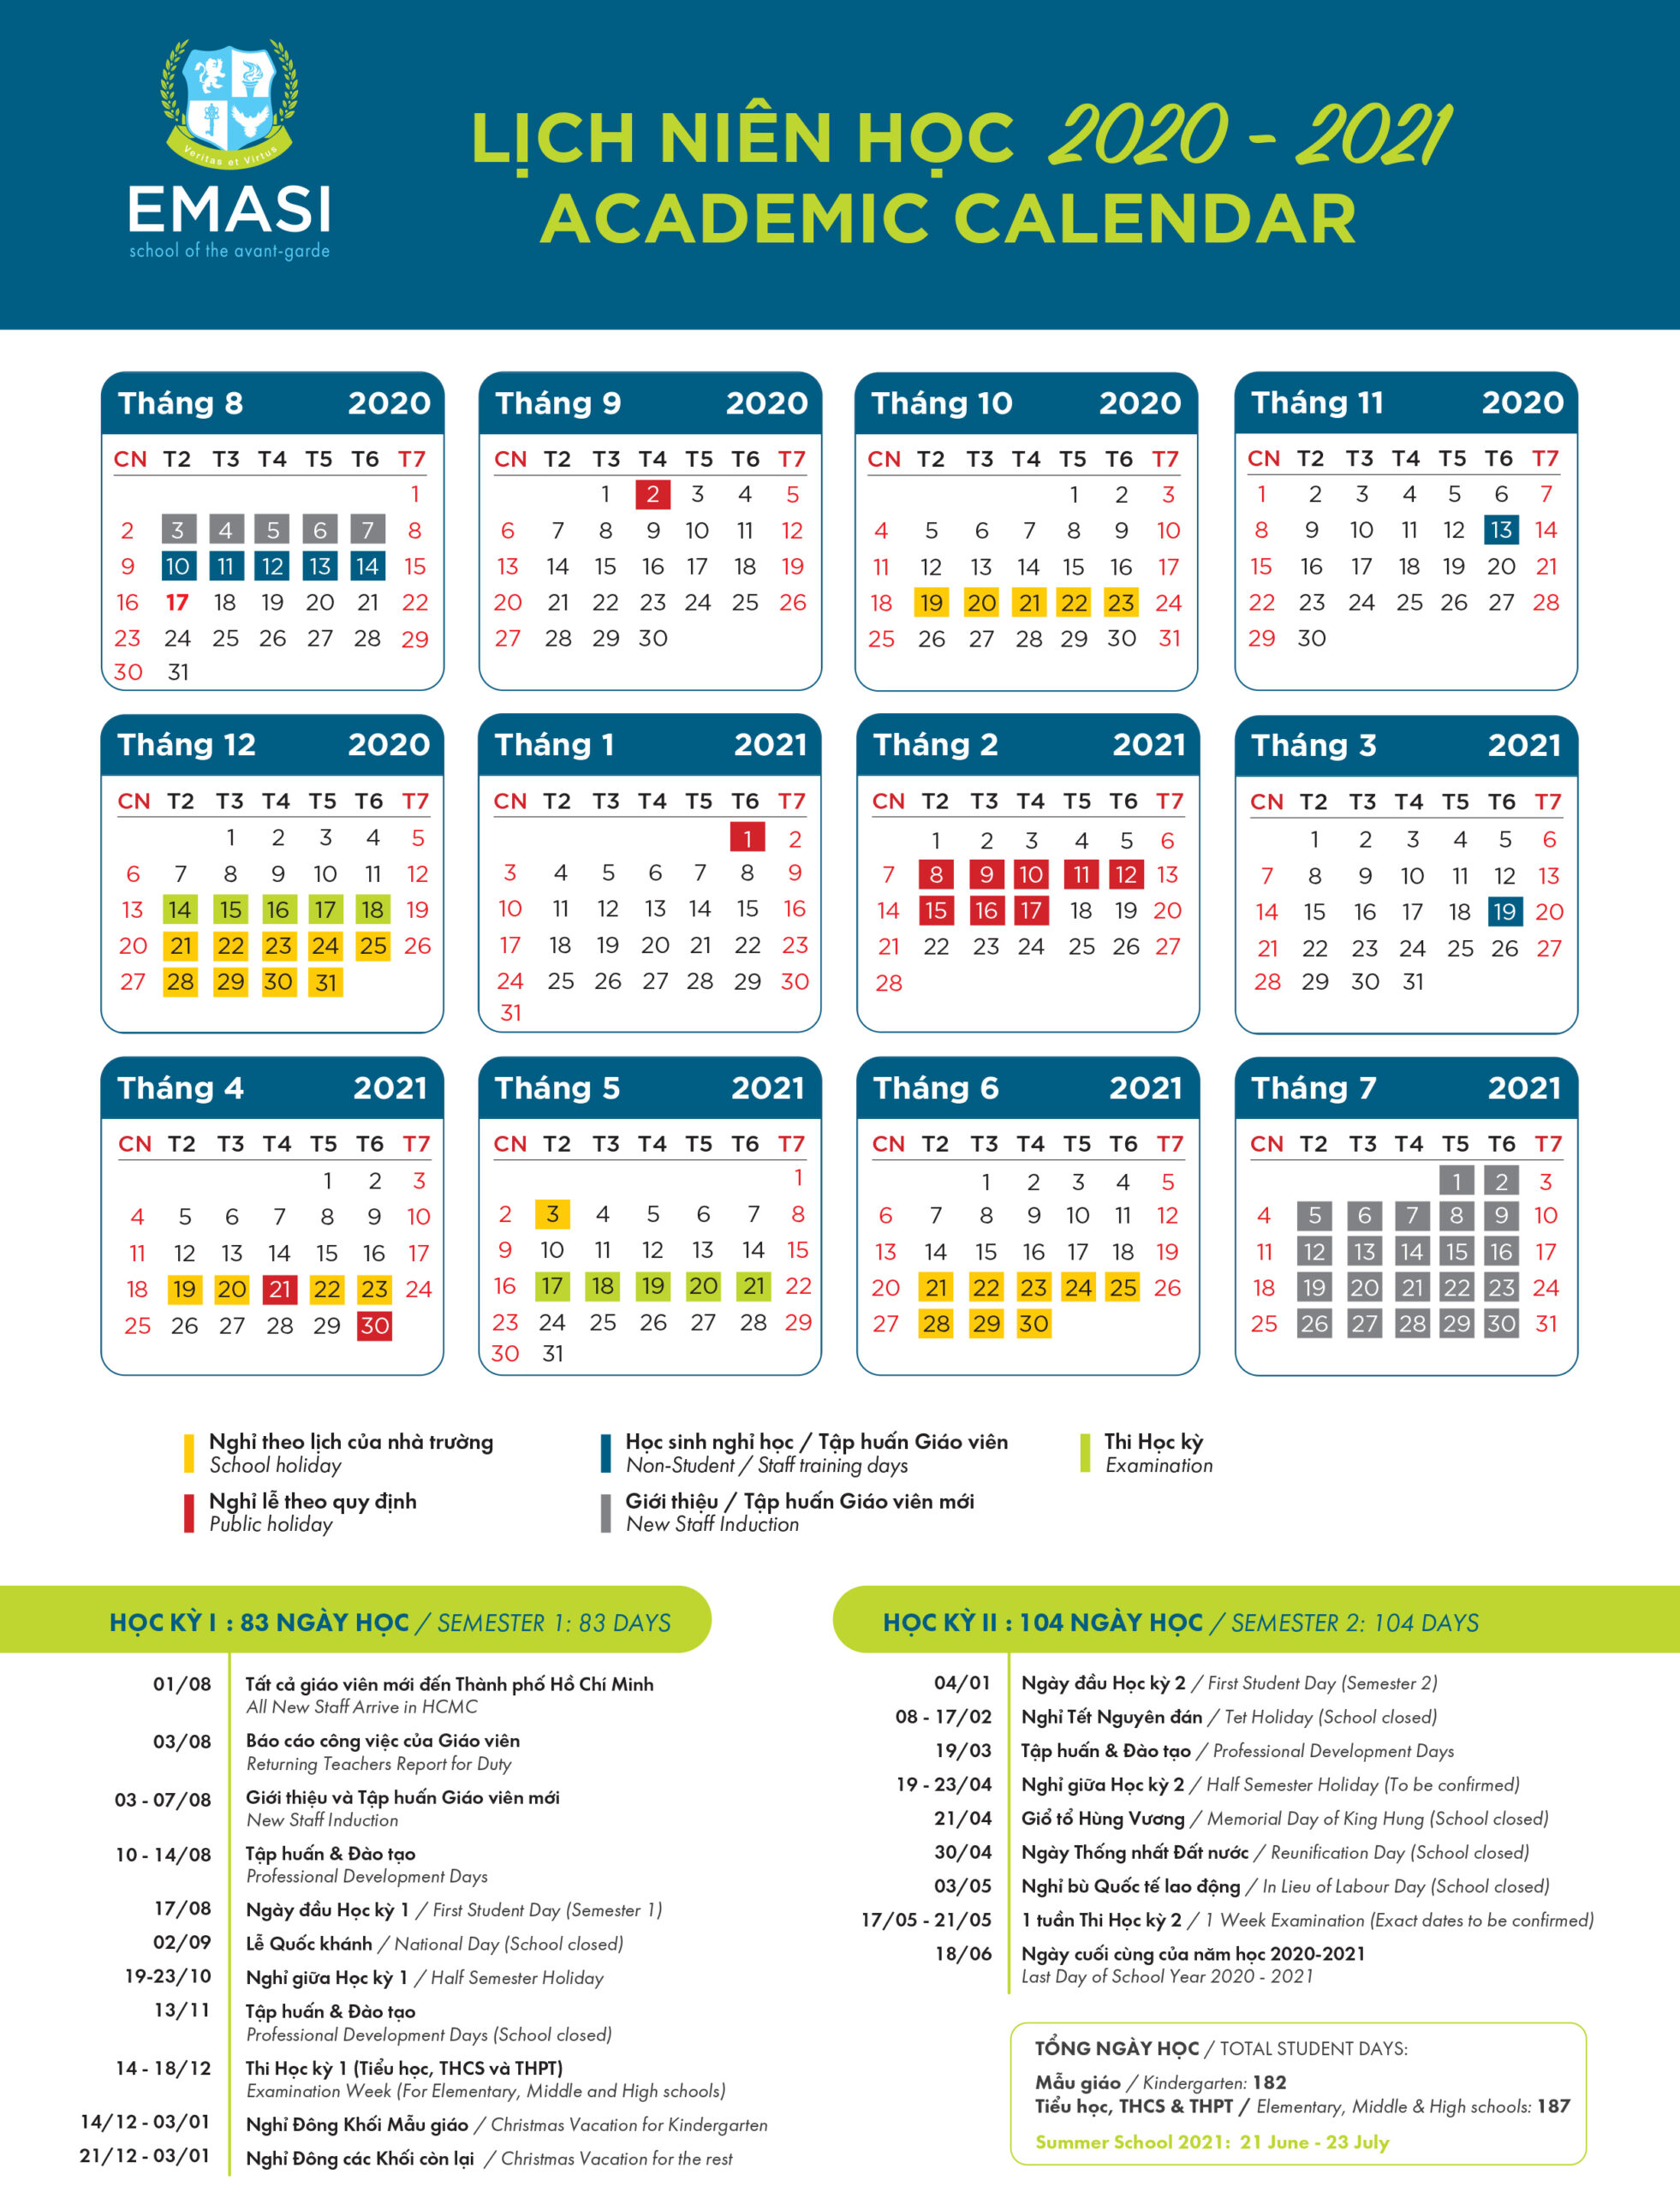 Academic Calendar - Emasi International Bilingual Education